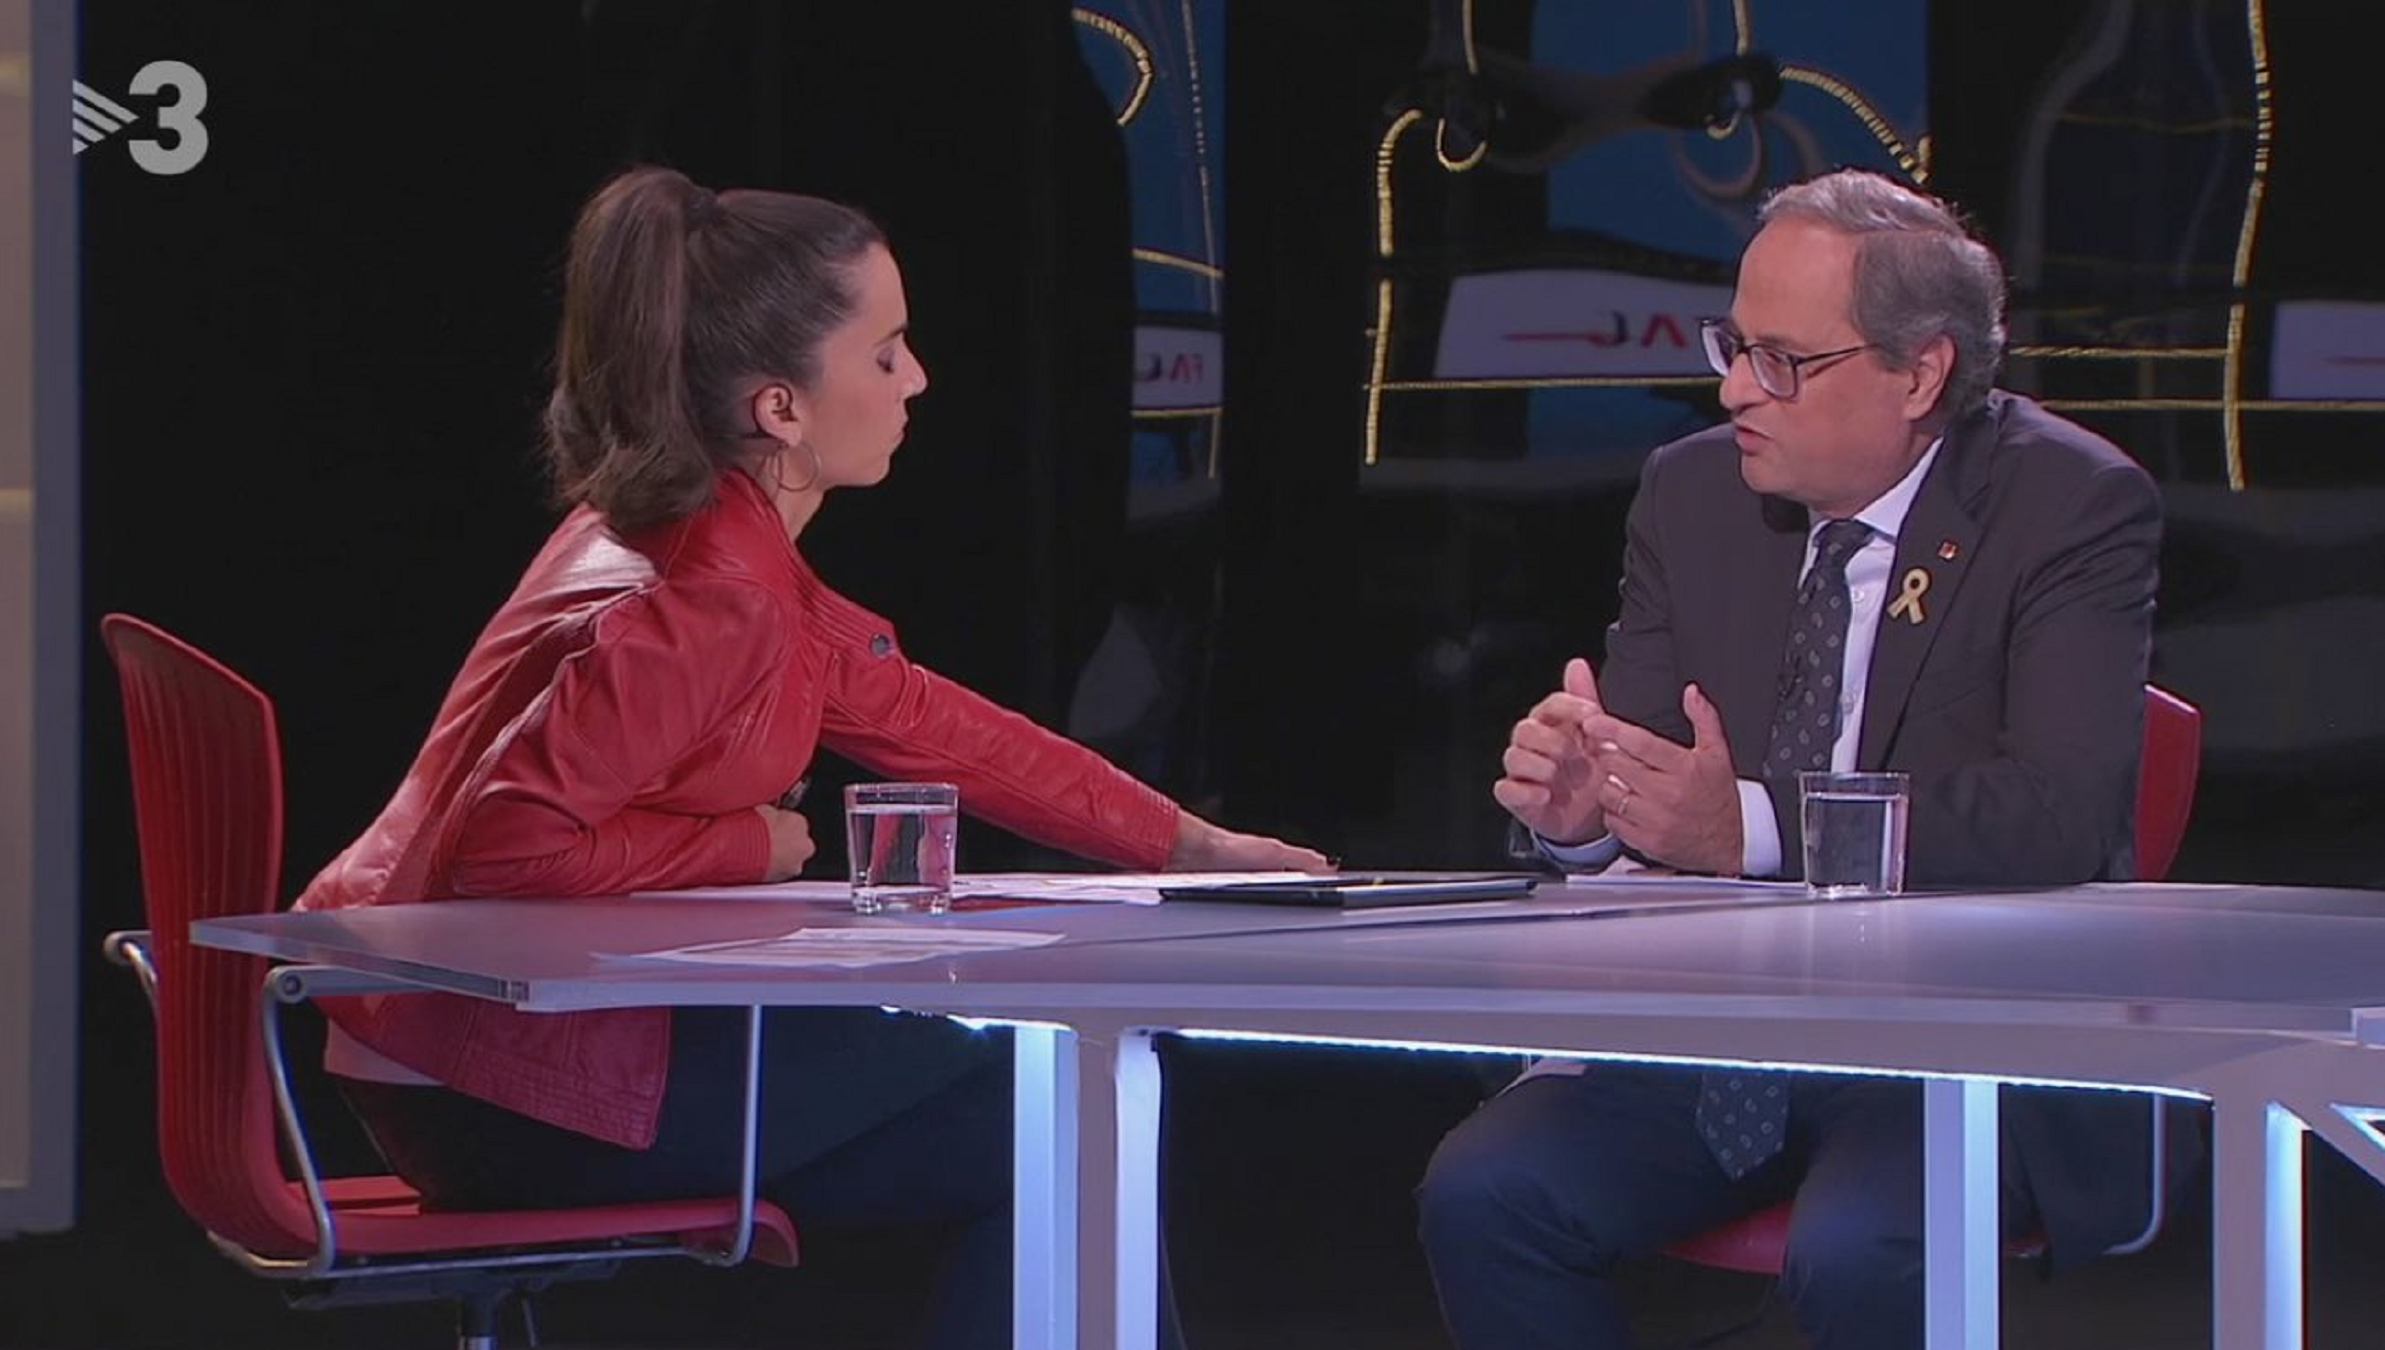 Monegal compara a Torra con la Pantoja y acusa a TV3 de reñirle por "blando"